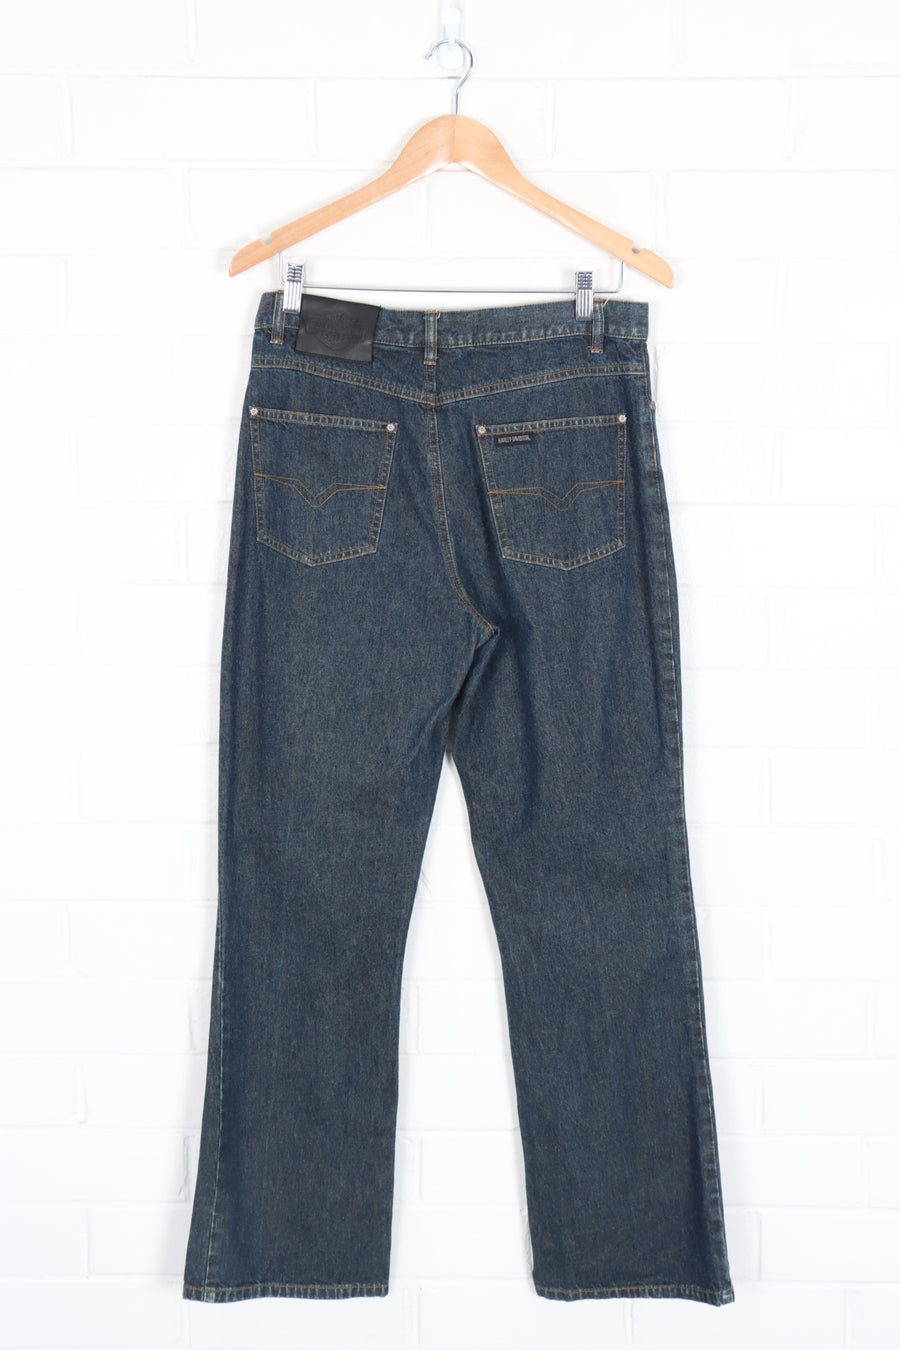 HARLEY DAVIDSON Embellished Dark Wash Jeans (Women's 10)